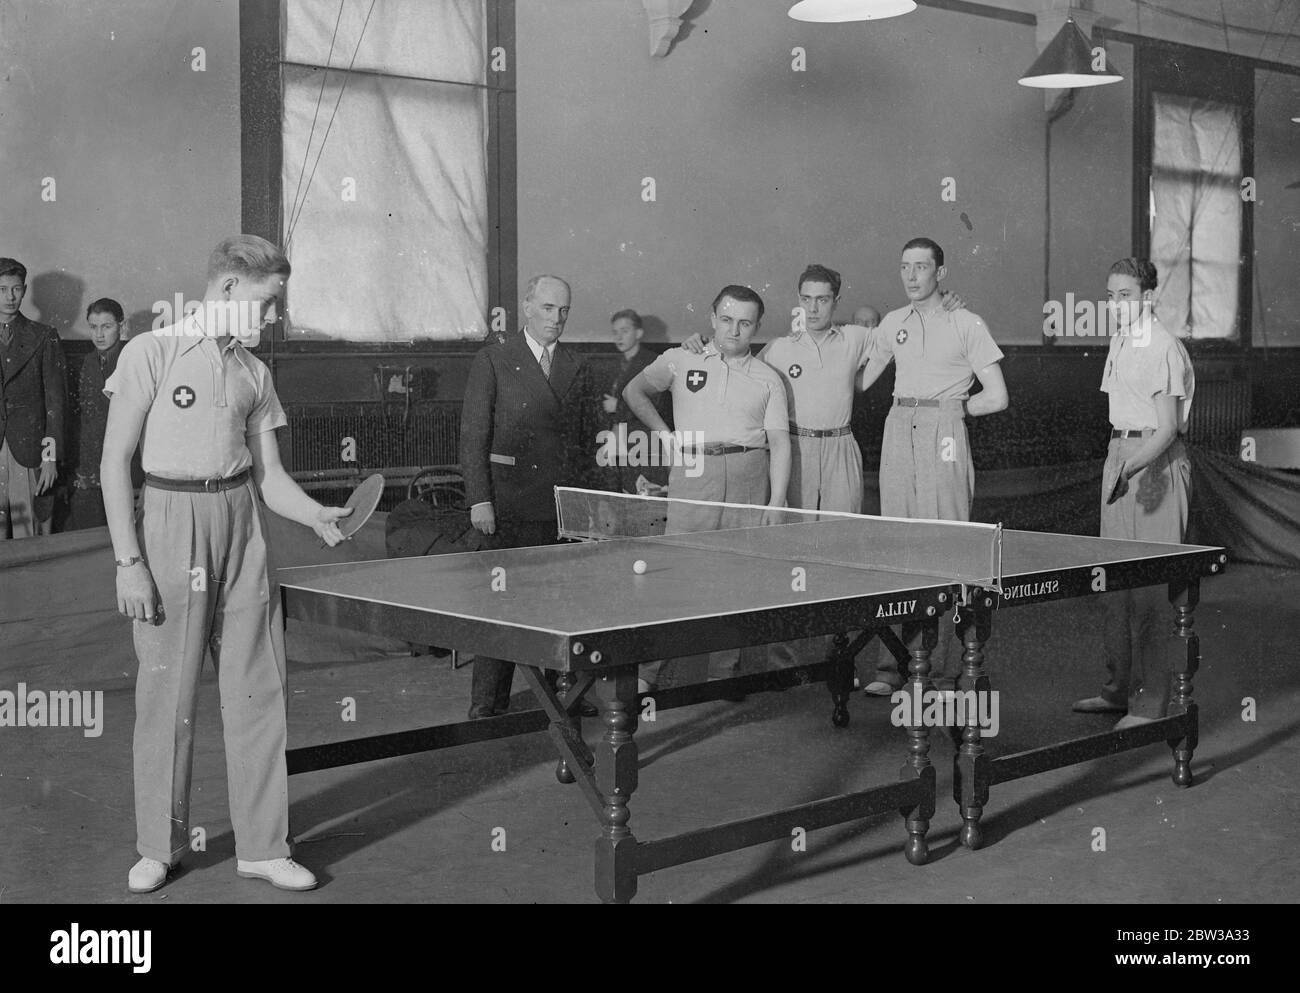 Die Tischtennis-Weltmeisterschaften wurden am Imperial Institute, Kensington, eröffnet. Foto zeigt, Mitglieder des Schweizer Teams erhalten Abschlusscoaching von ihrem Manager, Herrn P Barbier, vor dem Eröffnungsspiel. Februar 1935 Stockfoto